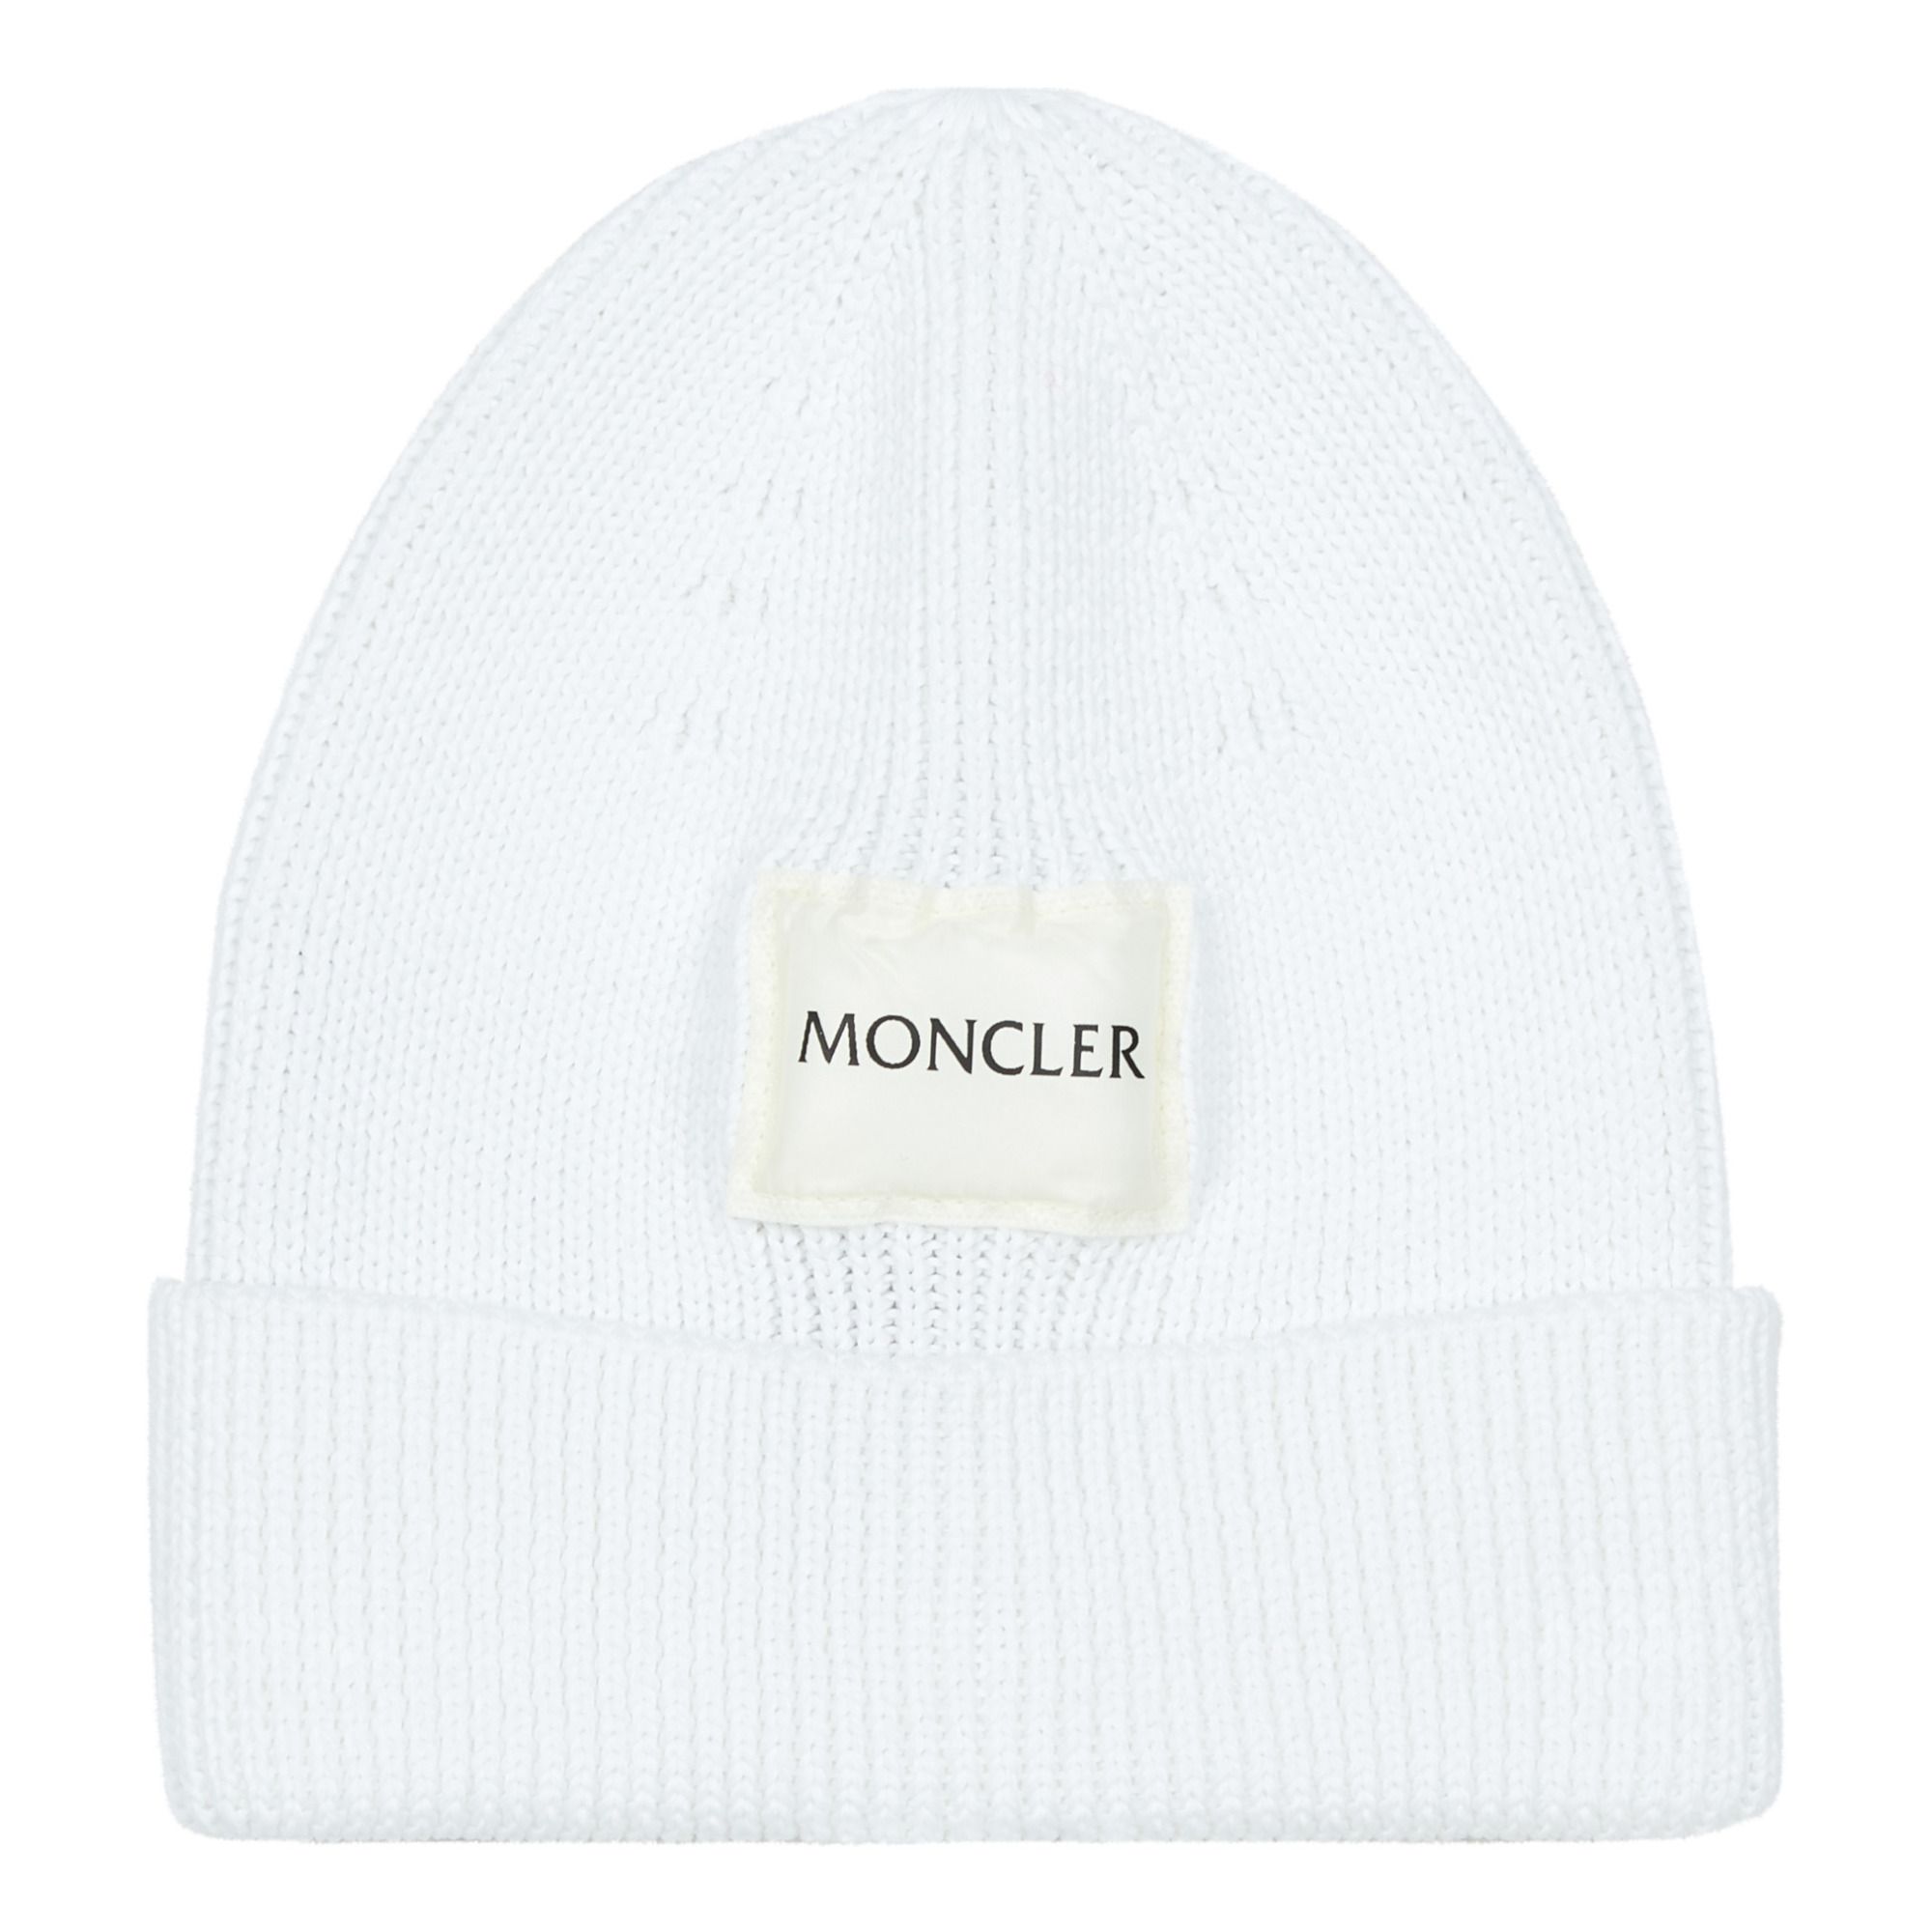 Moncler - Bonnet - Fille - Blanc